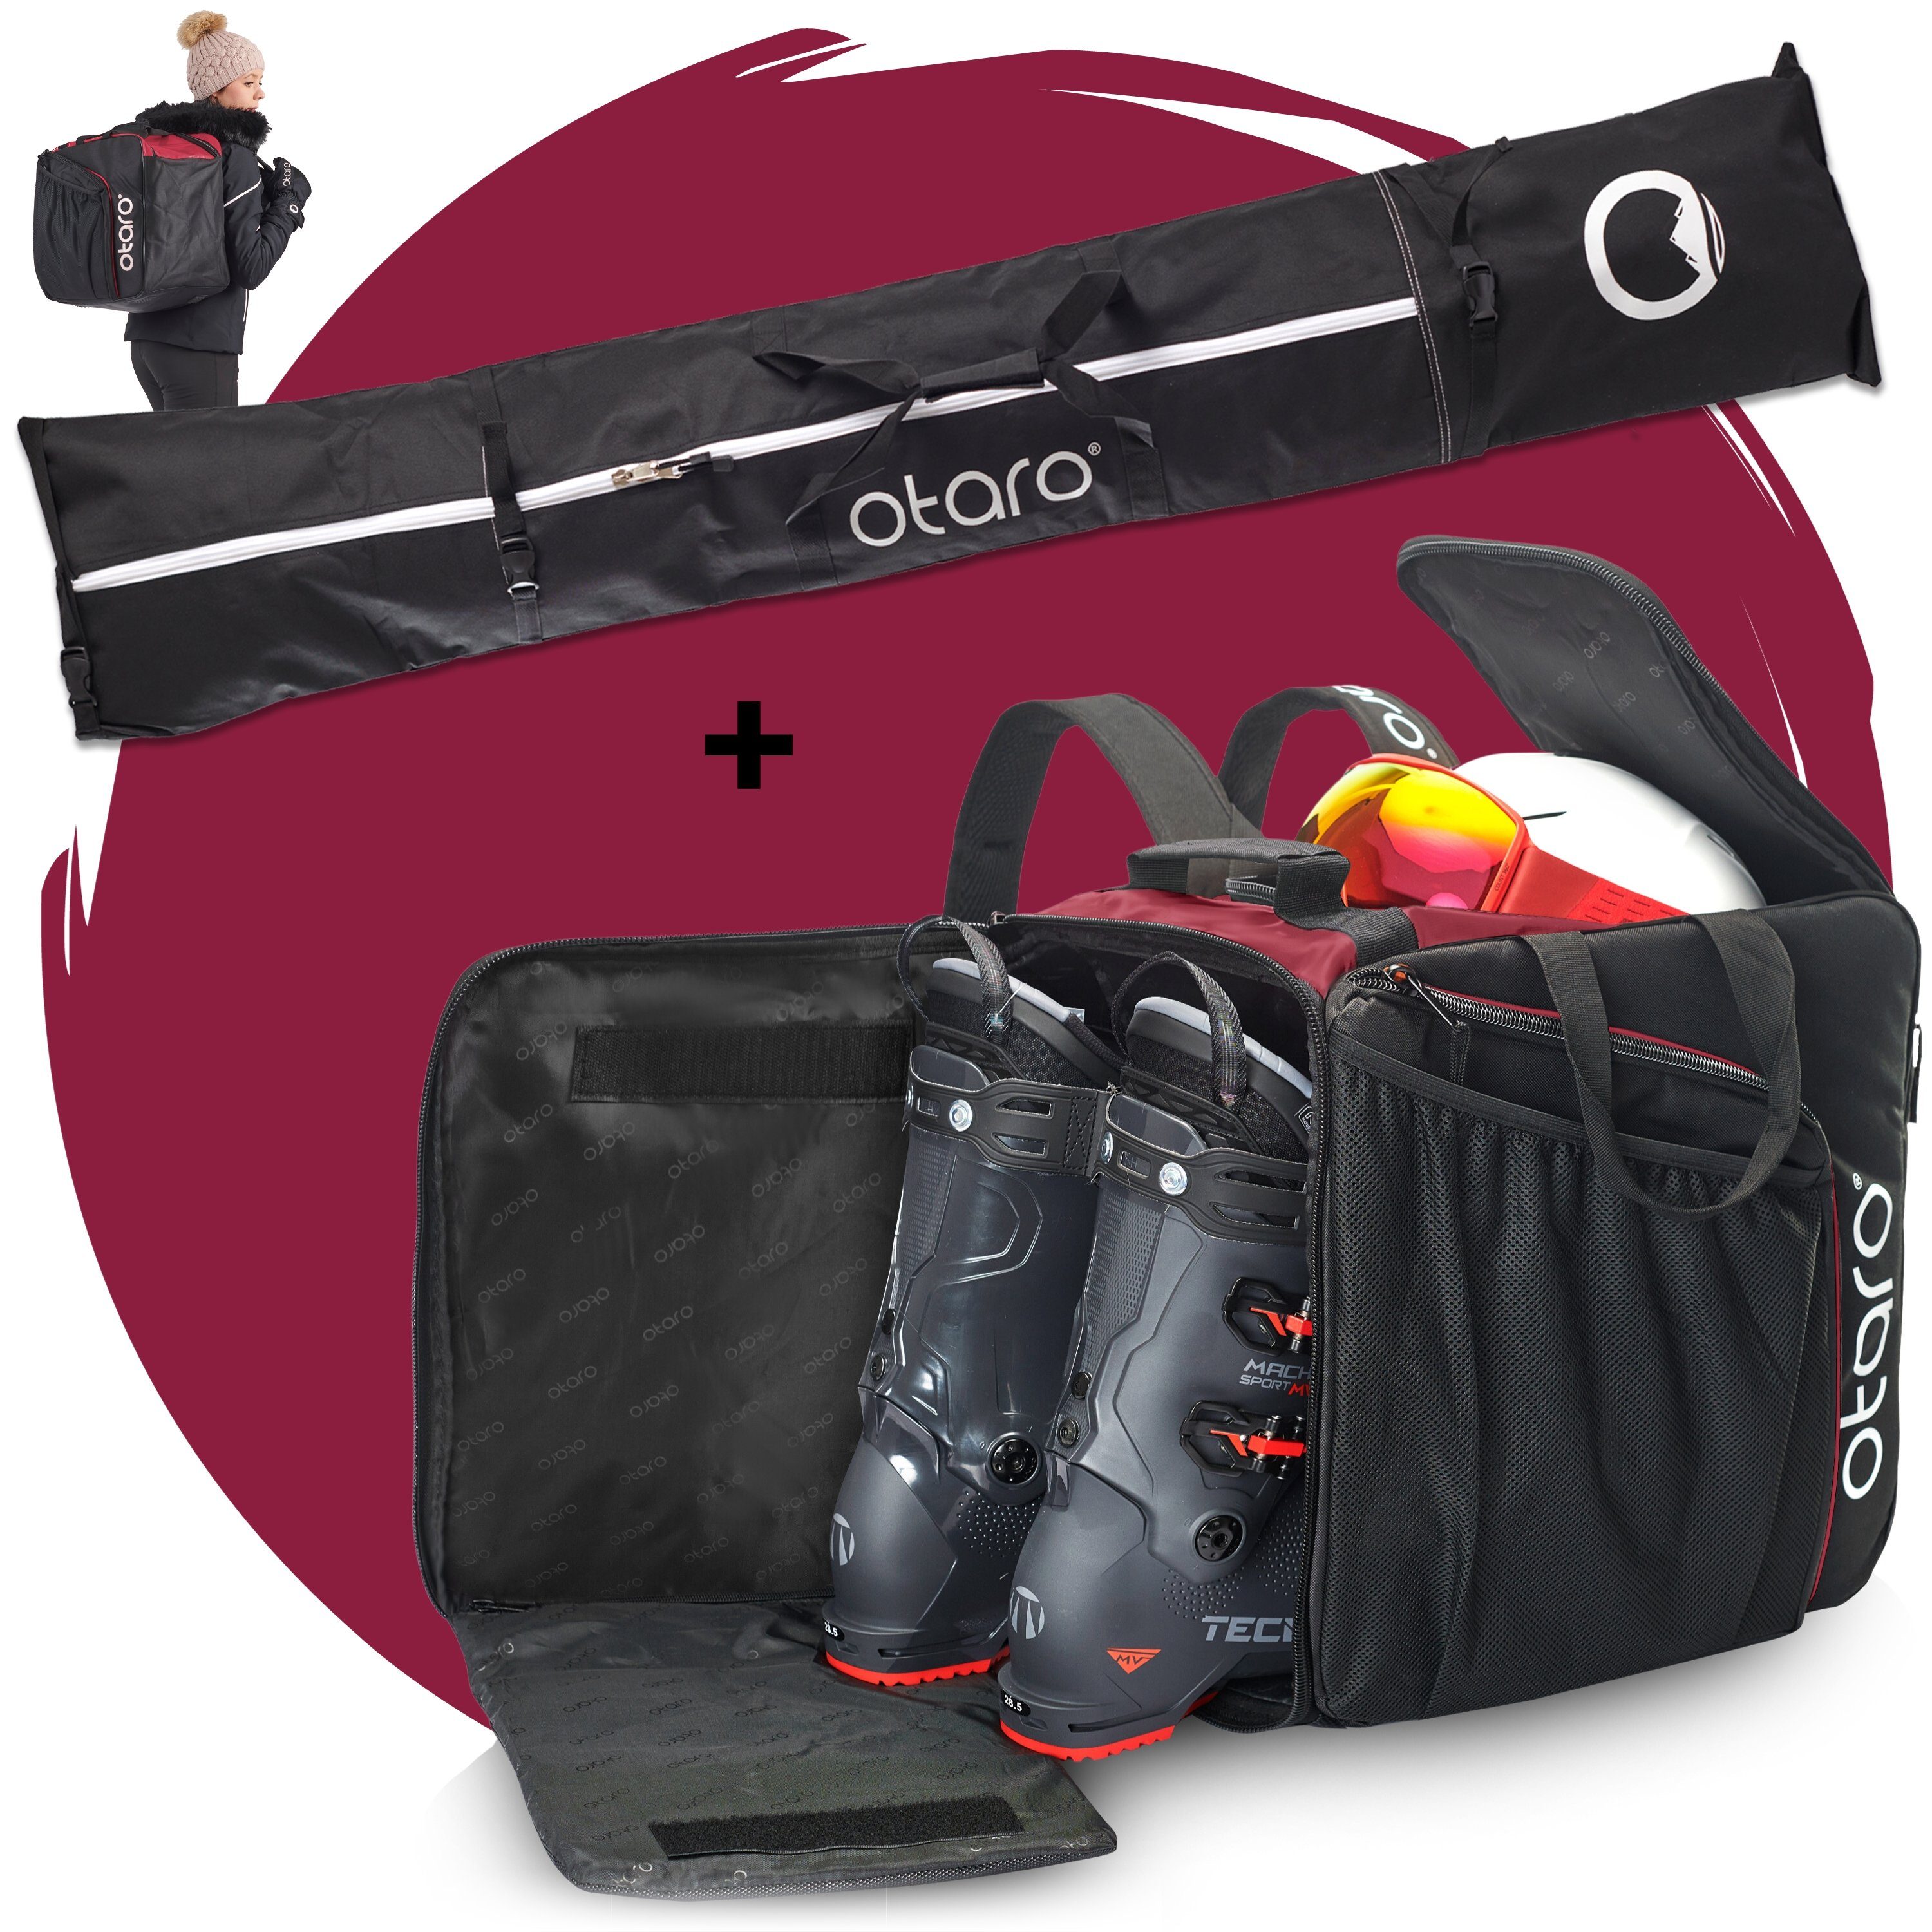 Otaro Skitasche Set: Skischuhtasche mit Schuhfach & Skitasche, Pro-Set für 2 Paar Ski (Schutz für deine Ausrüstung, Perfekt durchdacht, ausklappbare Standfläche, für 2 Paar Ski + Stöcke) Schwarz Bordeauxrot